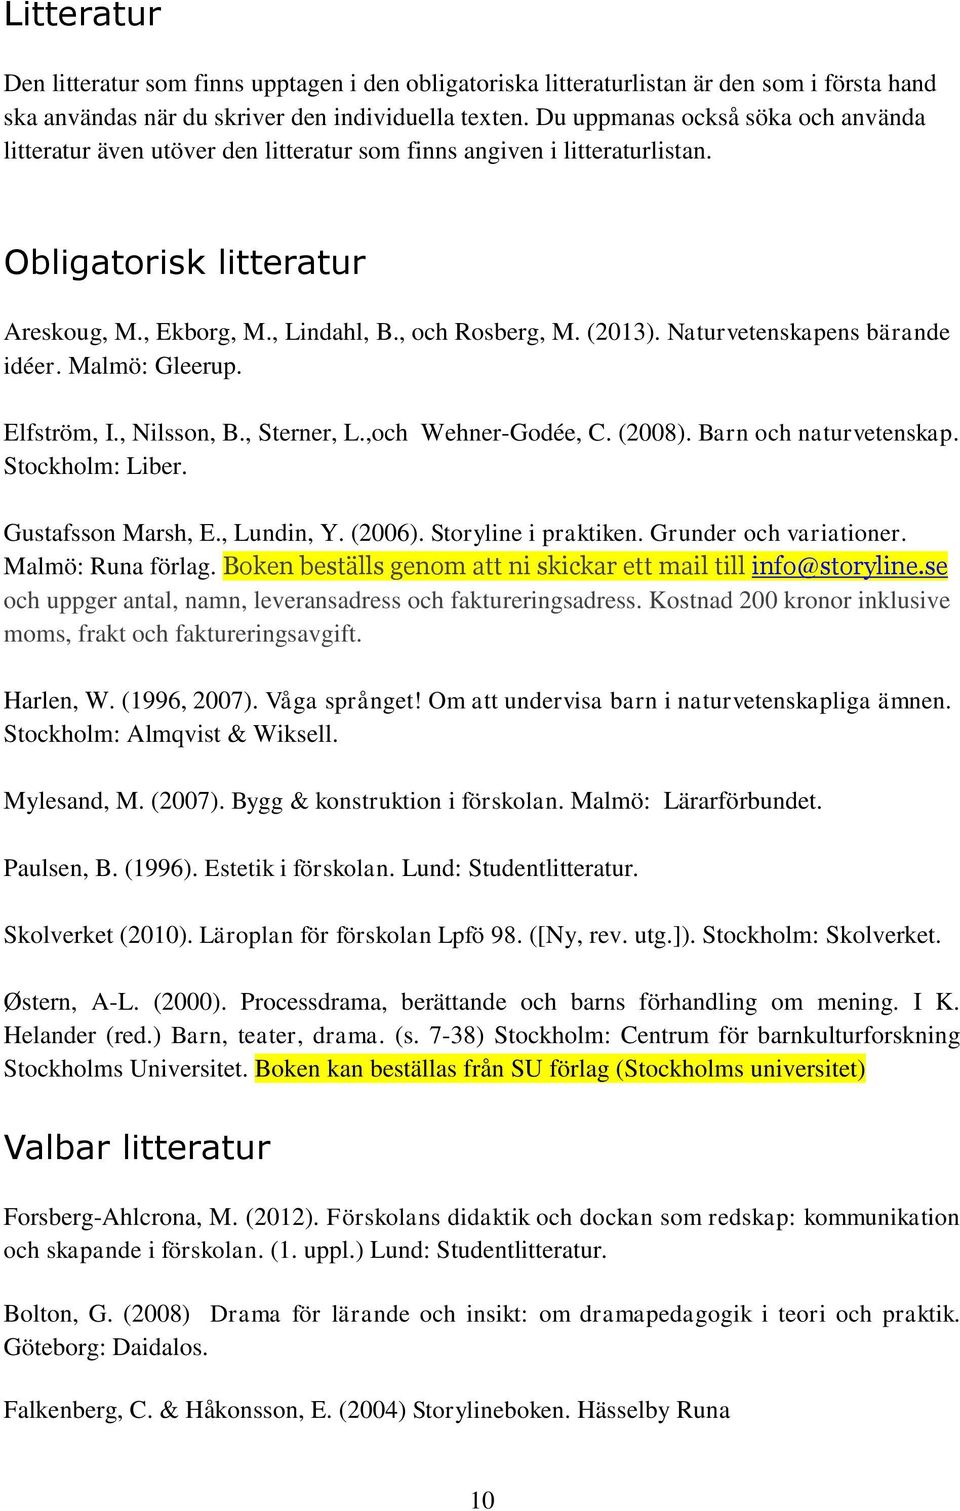 Naturvetenskapens bärande idéer. Malmö: Gleerup. Elfström, I., Nilsson, B., Sterner, L.,och Wehner-Godée, C. (2008). Barn och naturvetenskap. Stockholm: Liber. Gustafsson Marsh, E., Lundin, Y. (2006).